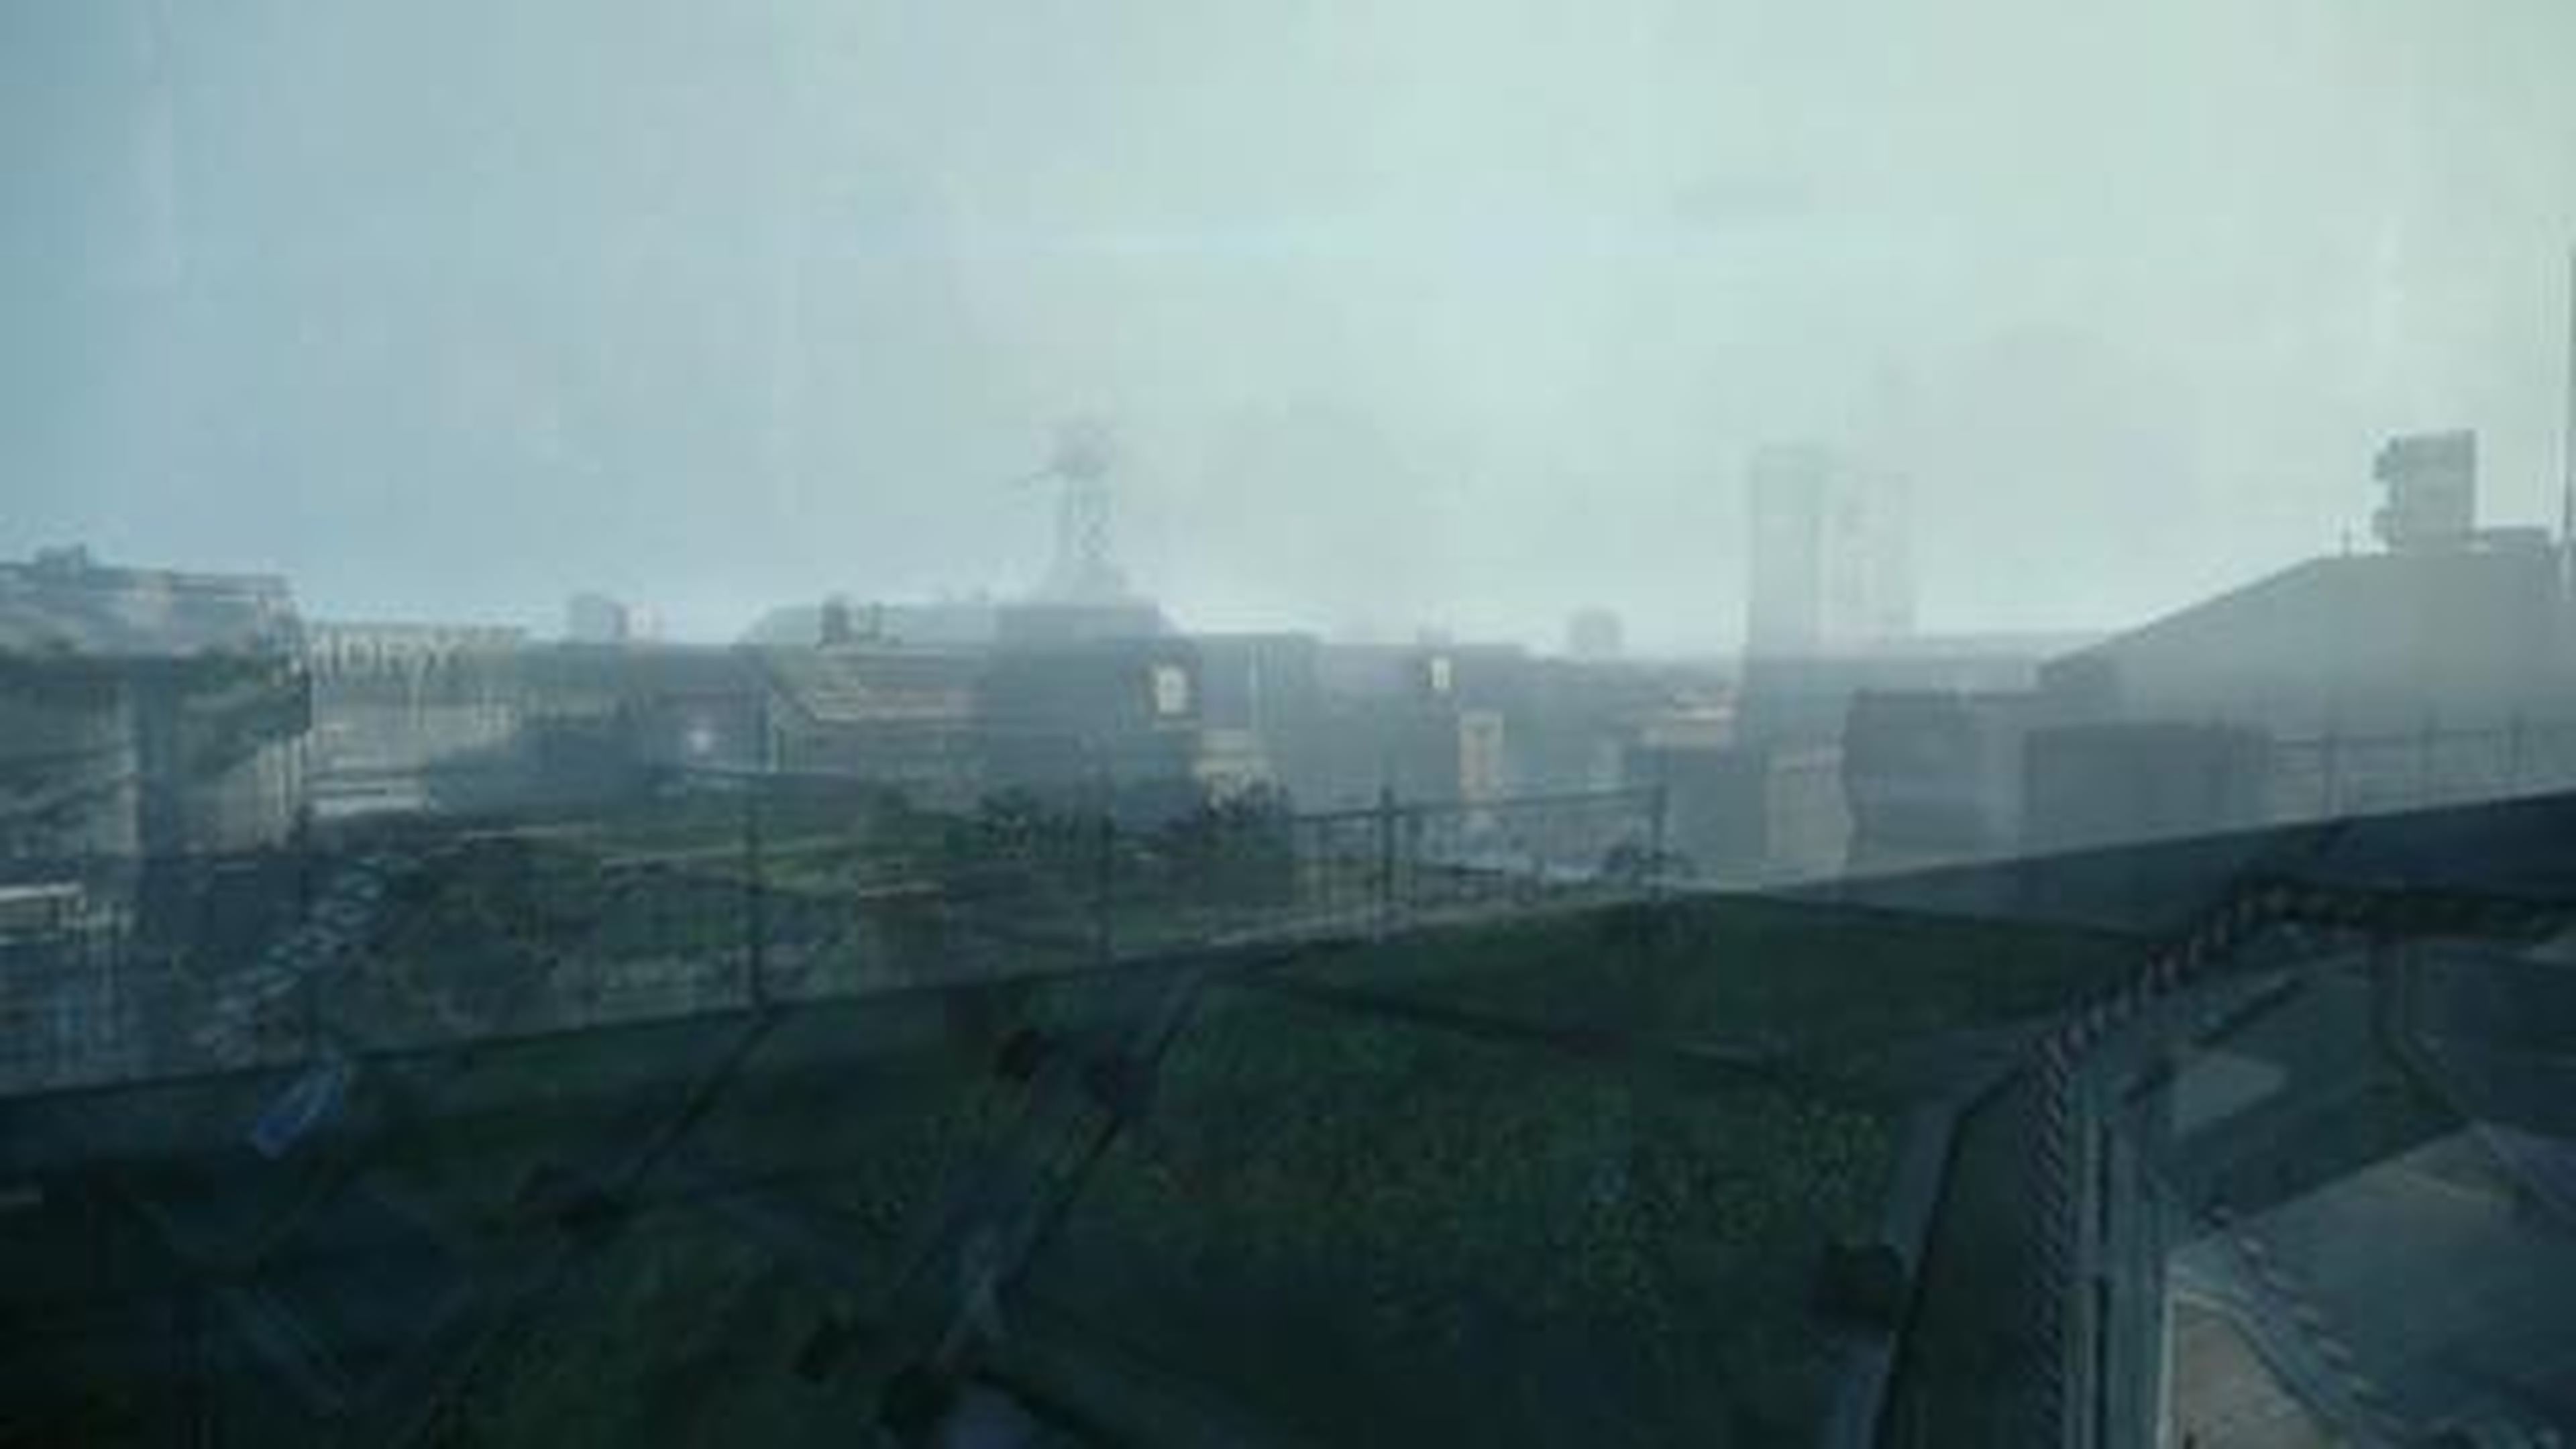 Titanfall - IMC Rising DLC Gameplay Trailer